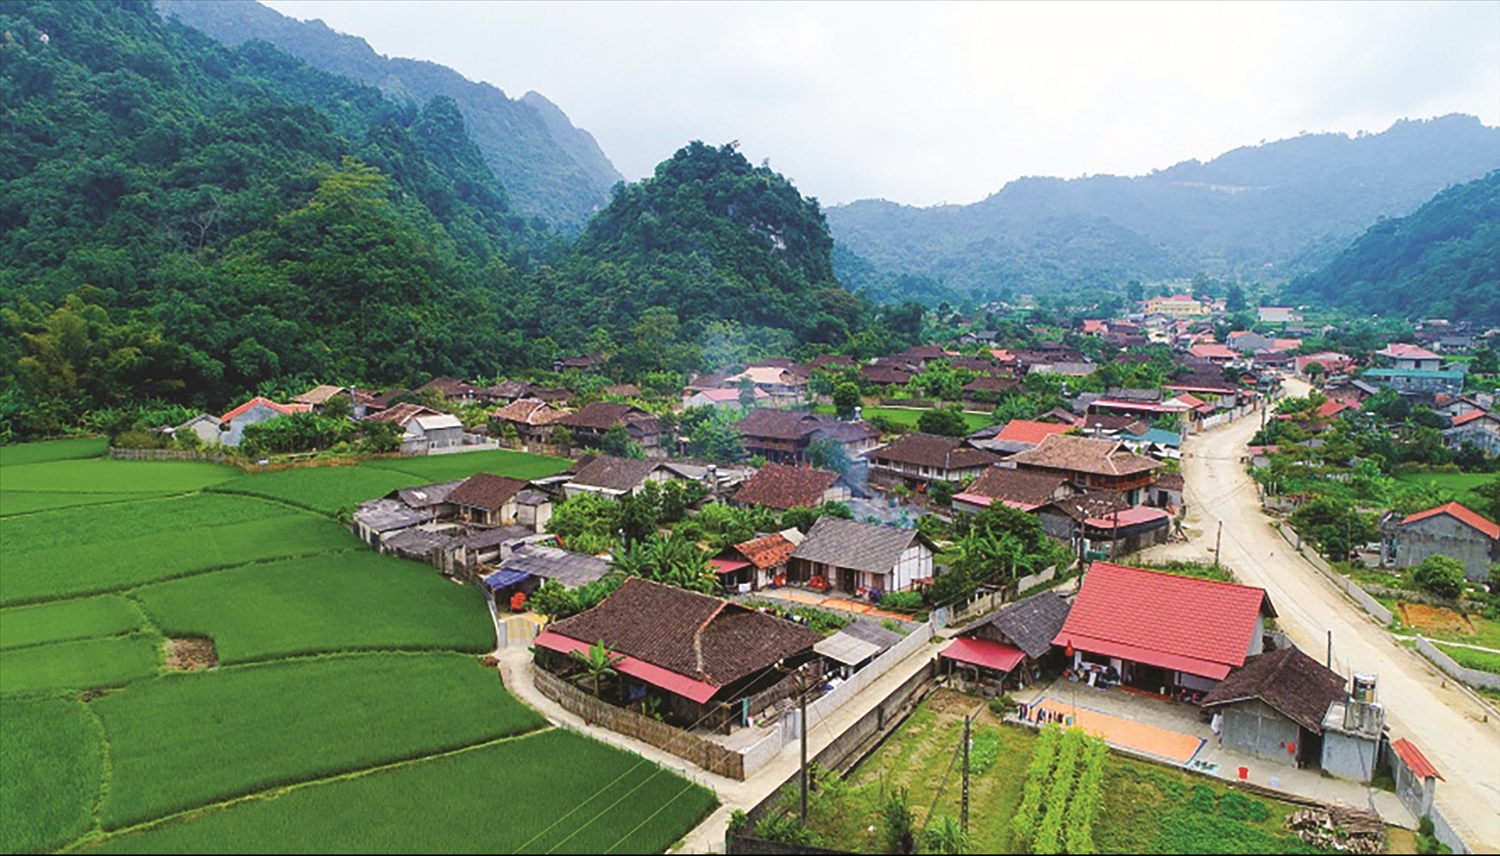  Việc huy động hợp lý các nguồn vốn ODA sẽ giúp cho Việt Nam thực hiện thành công, hiệu quả Chương trình MTQG 1719, góp phần nâng cao đời sống cho vùng đồng bào DTTS và miền núi.